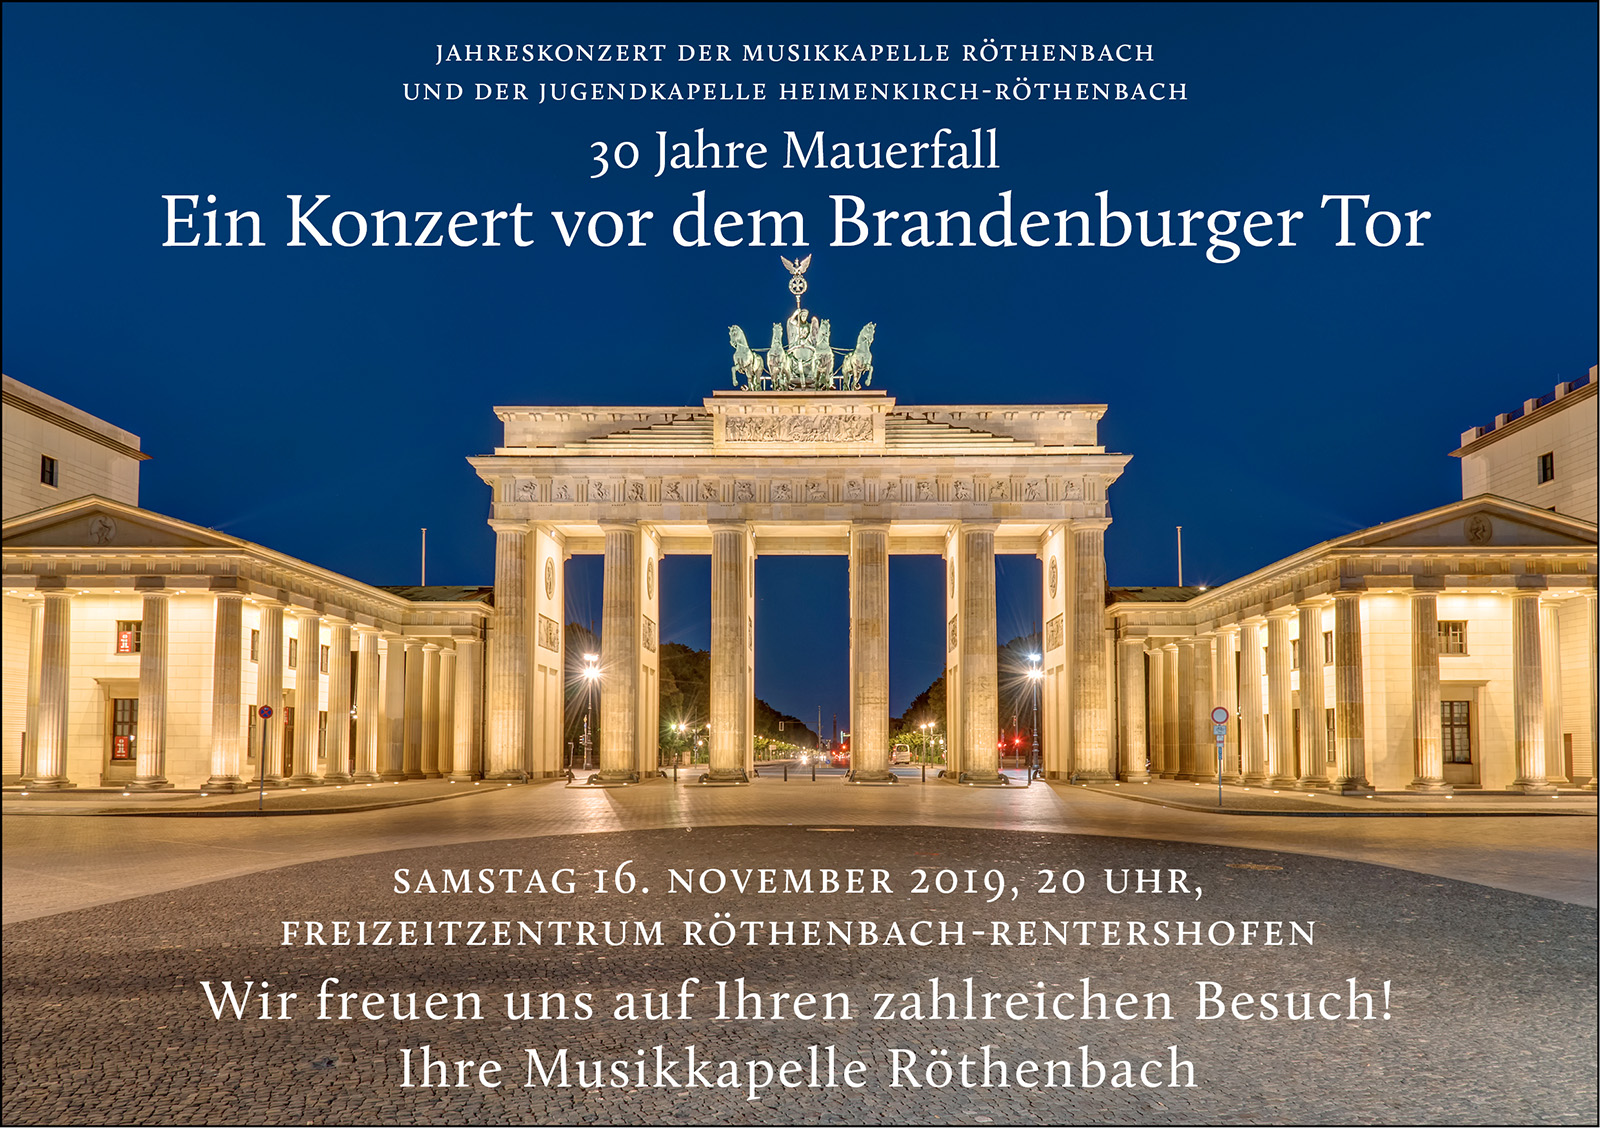 Jahreskonzert der Musikkapelle Röthenbach 2019 unter dem Motto "30 Jahre Mauerfall – Ein Konzert vor dem Brandenburger Tor"